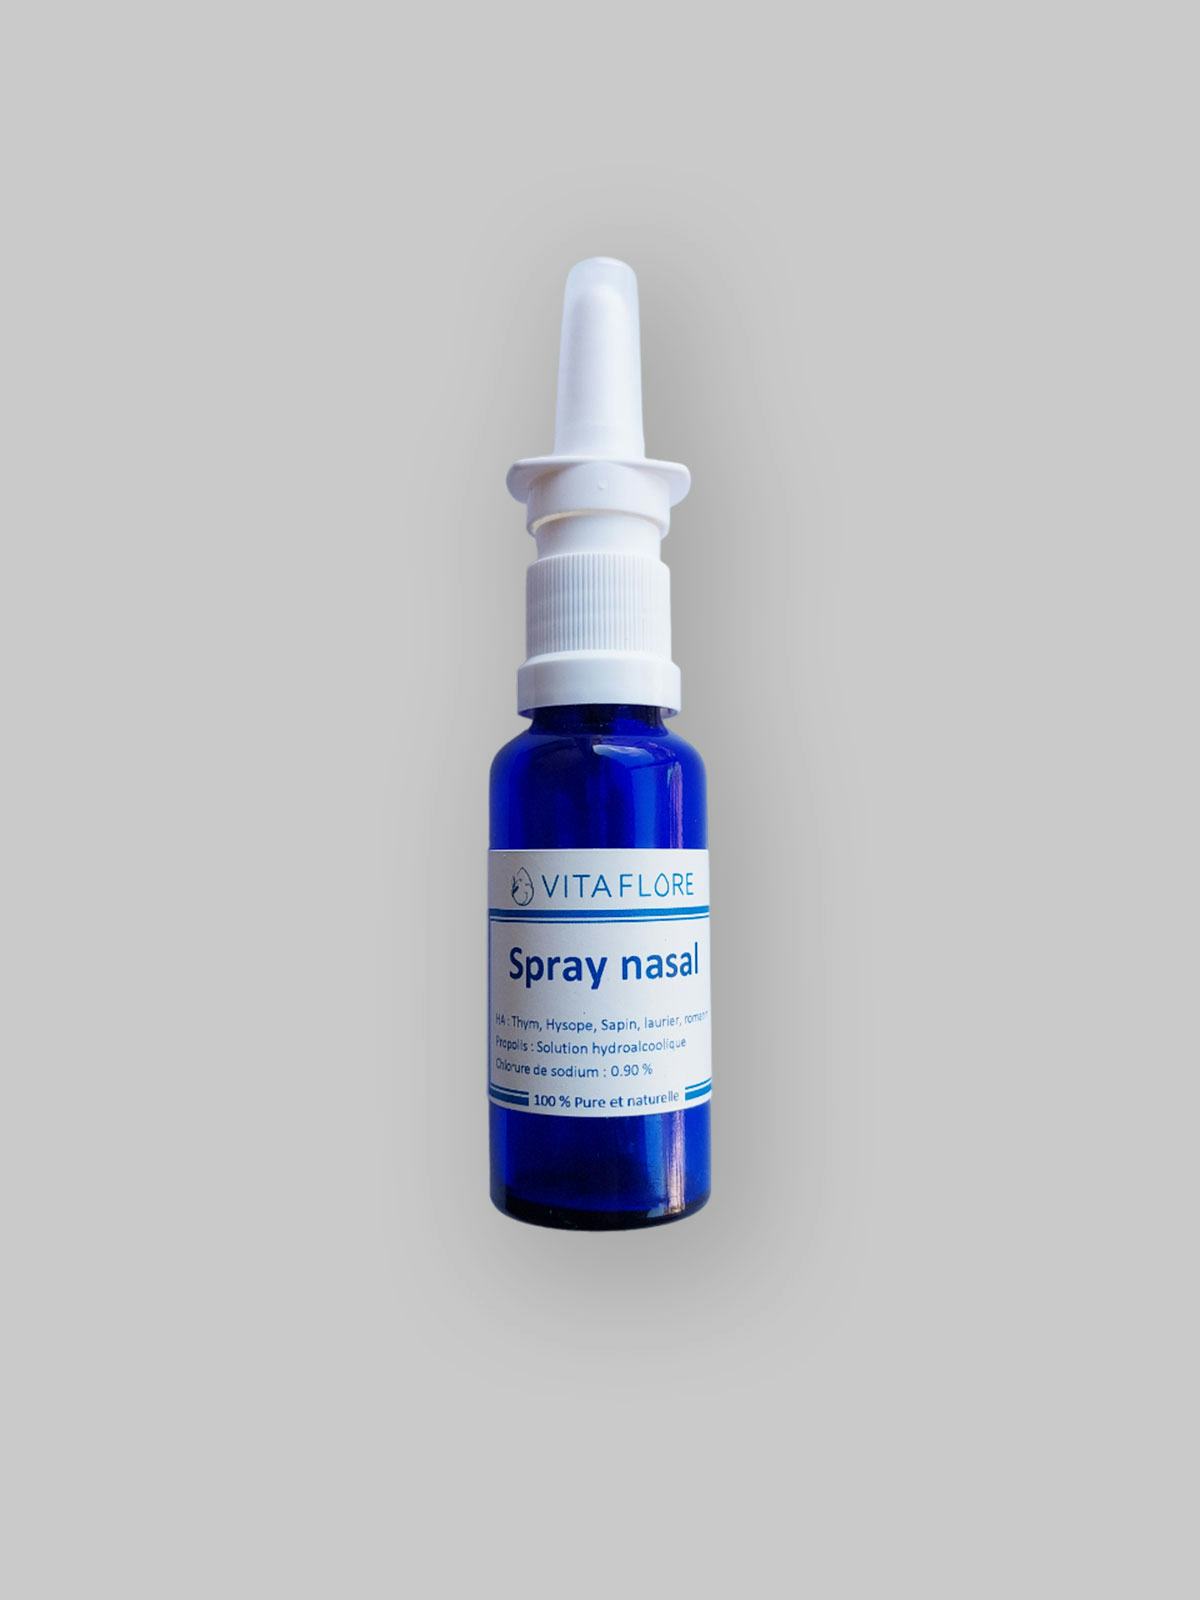 Spray nasale, prodotto artigianale per la vendita diretta in Svizzera